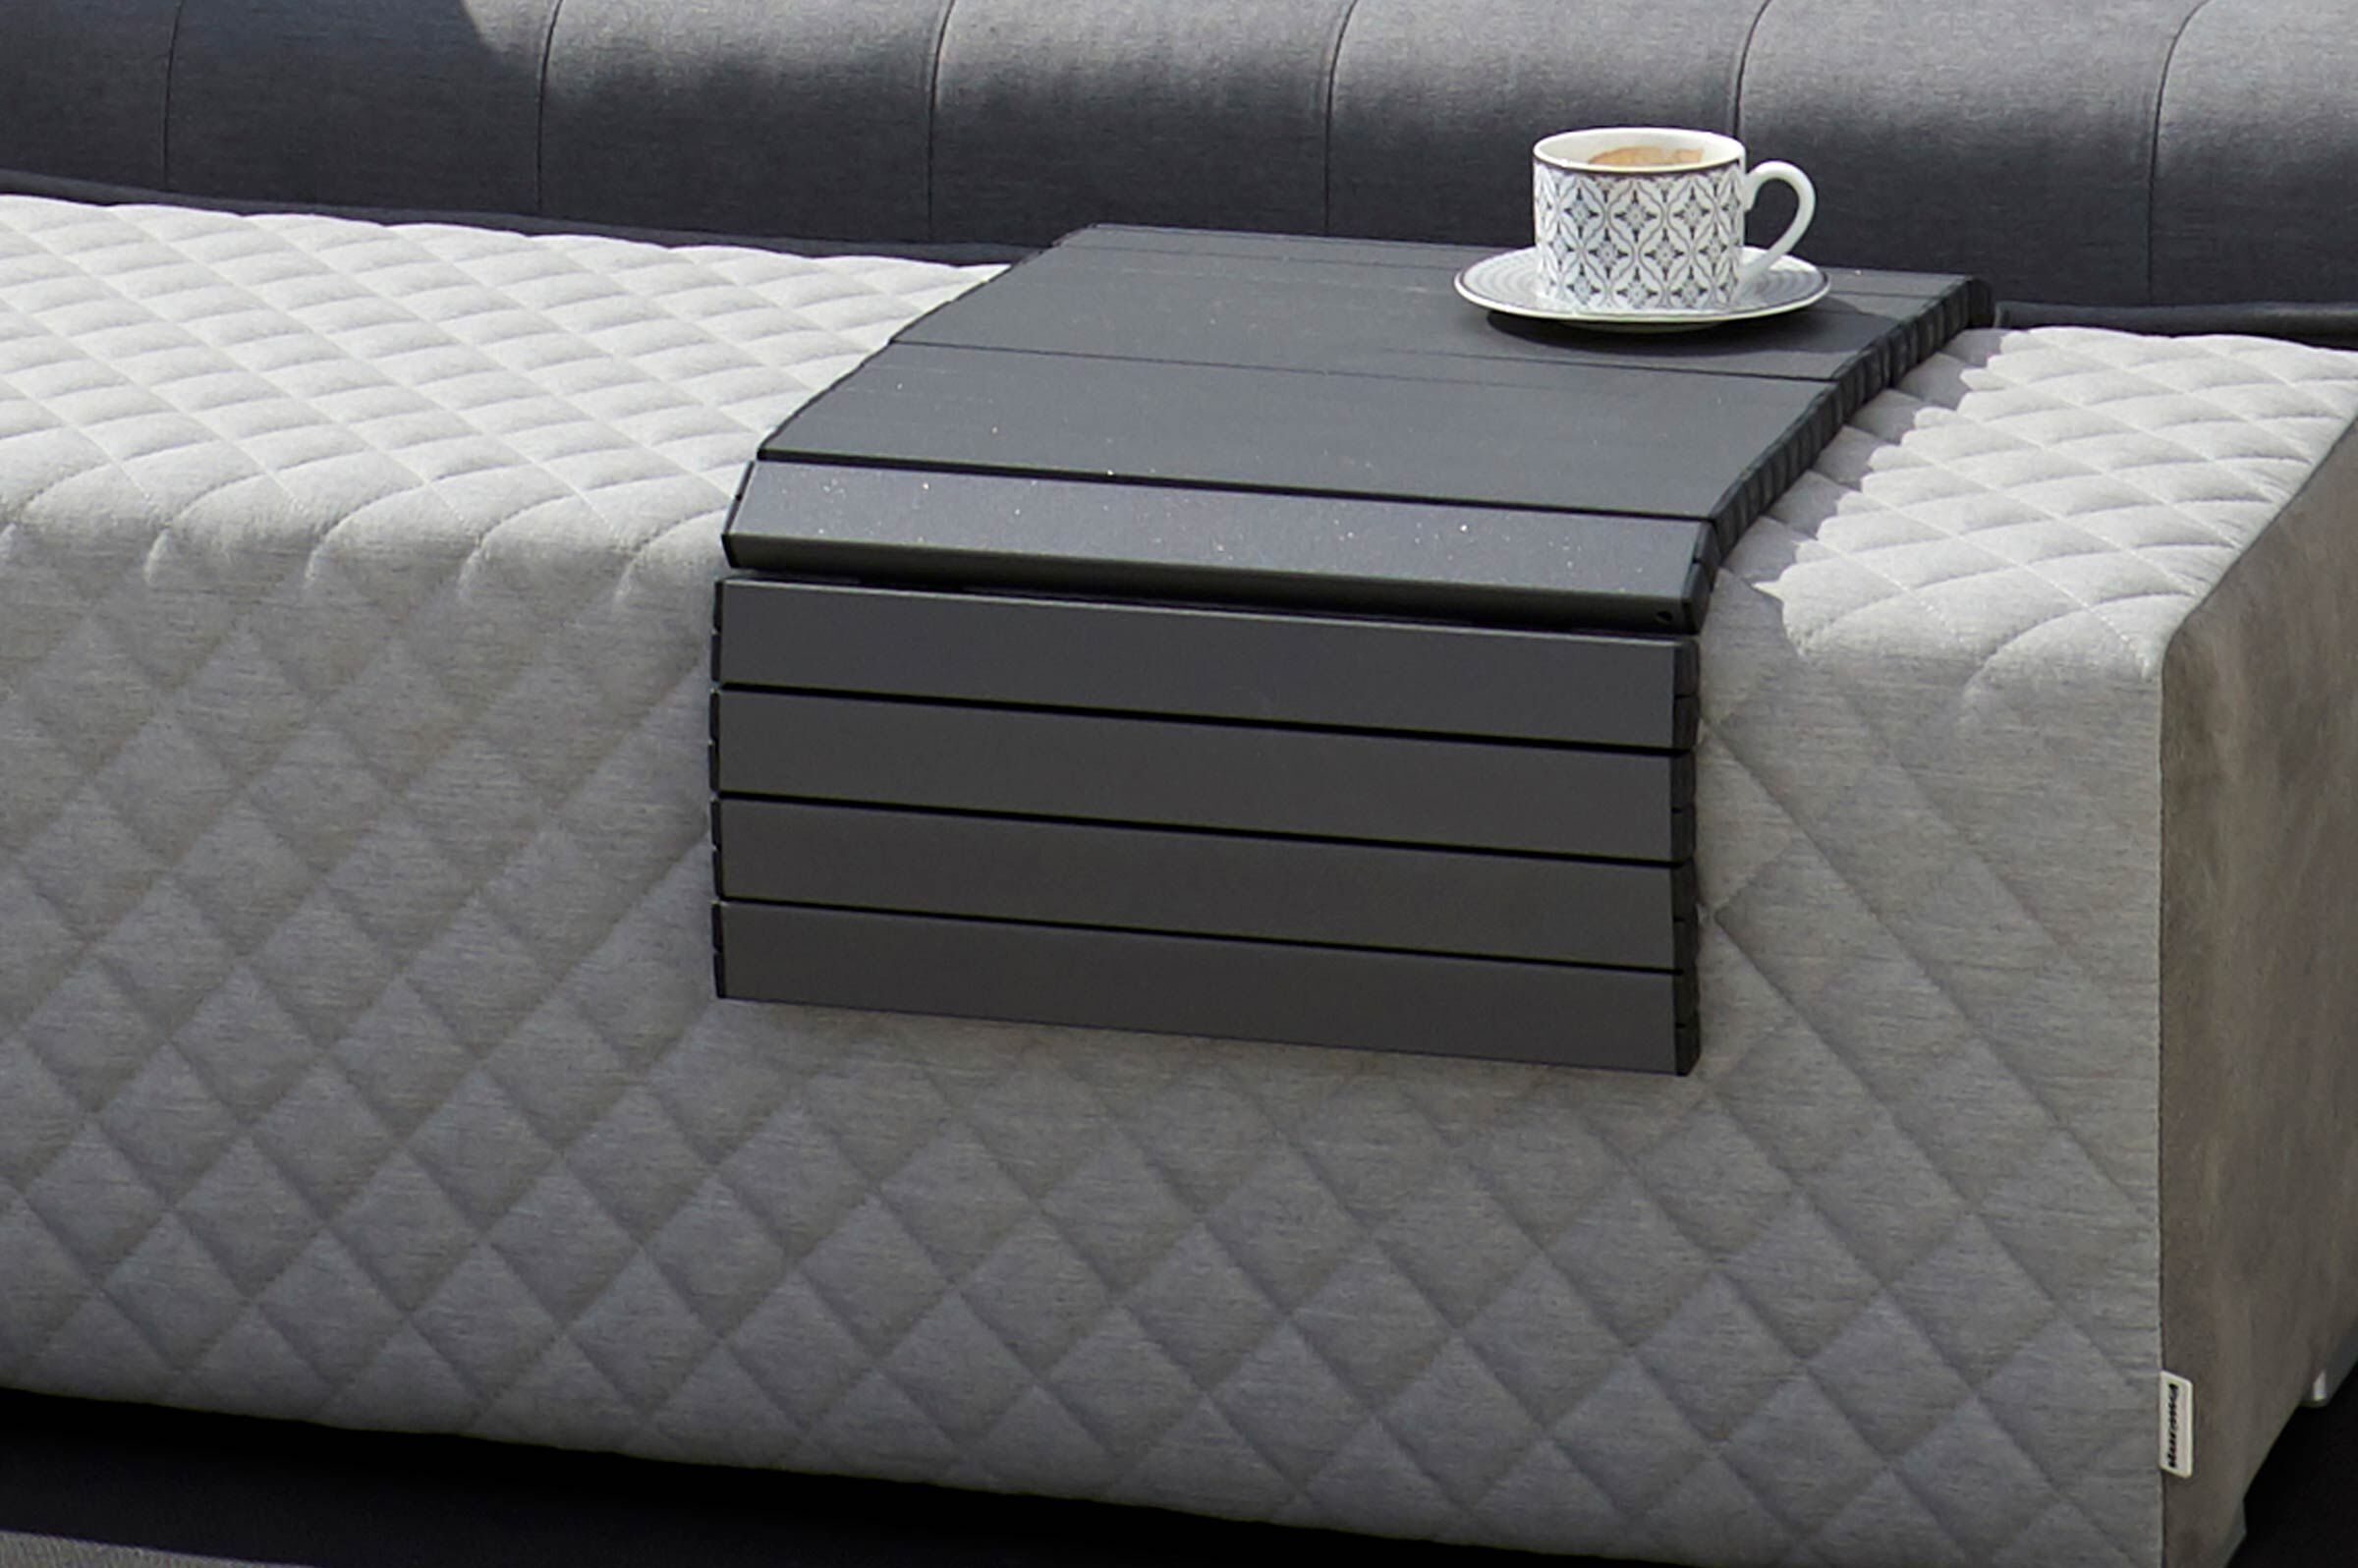 OUTFLEXX Cozy Tablett, schwarz, Aluminium, 89 x 40 cm, zum Auflegen auf Möbel, biegsam